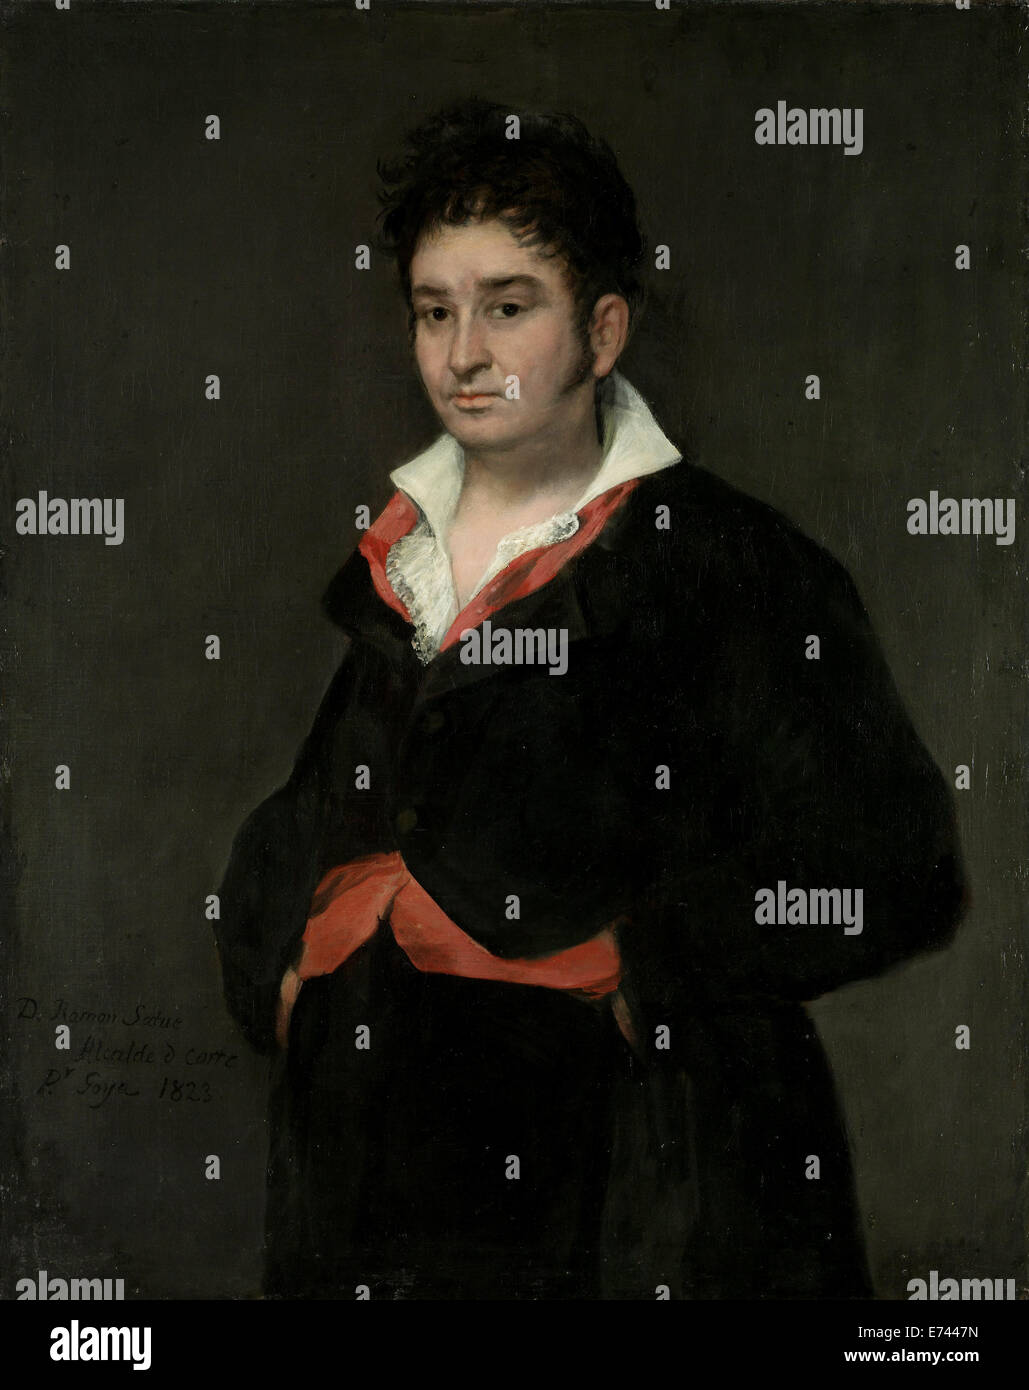 Don Ramón Satué - Porträt von Francisco José de Goya y Lucientes 1823 Stockfoto